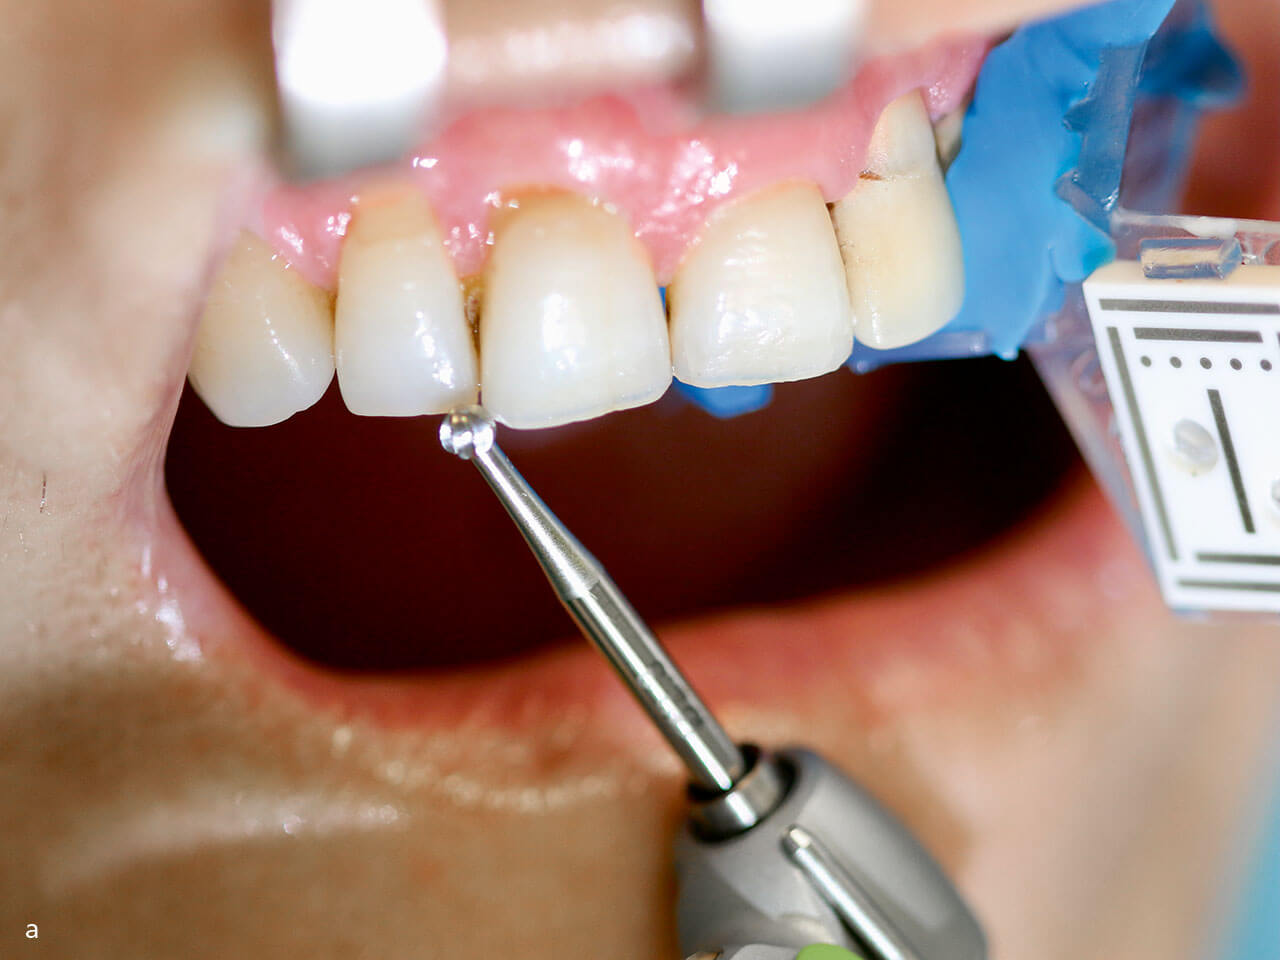 Abb 4 a Regelmäßige Kontrolle der Systemgenauigkeit während eines Eingriffs (Bohrerspitze an Zahn): Anatomische Landmarks werden mit der Bohrerspitze markiert.